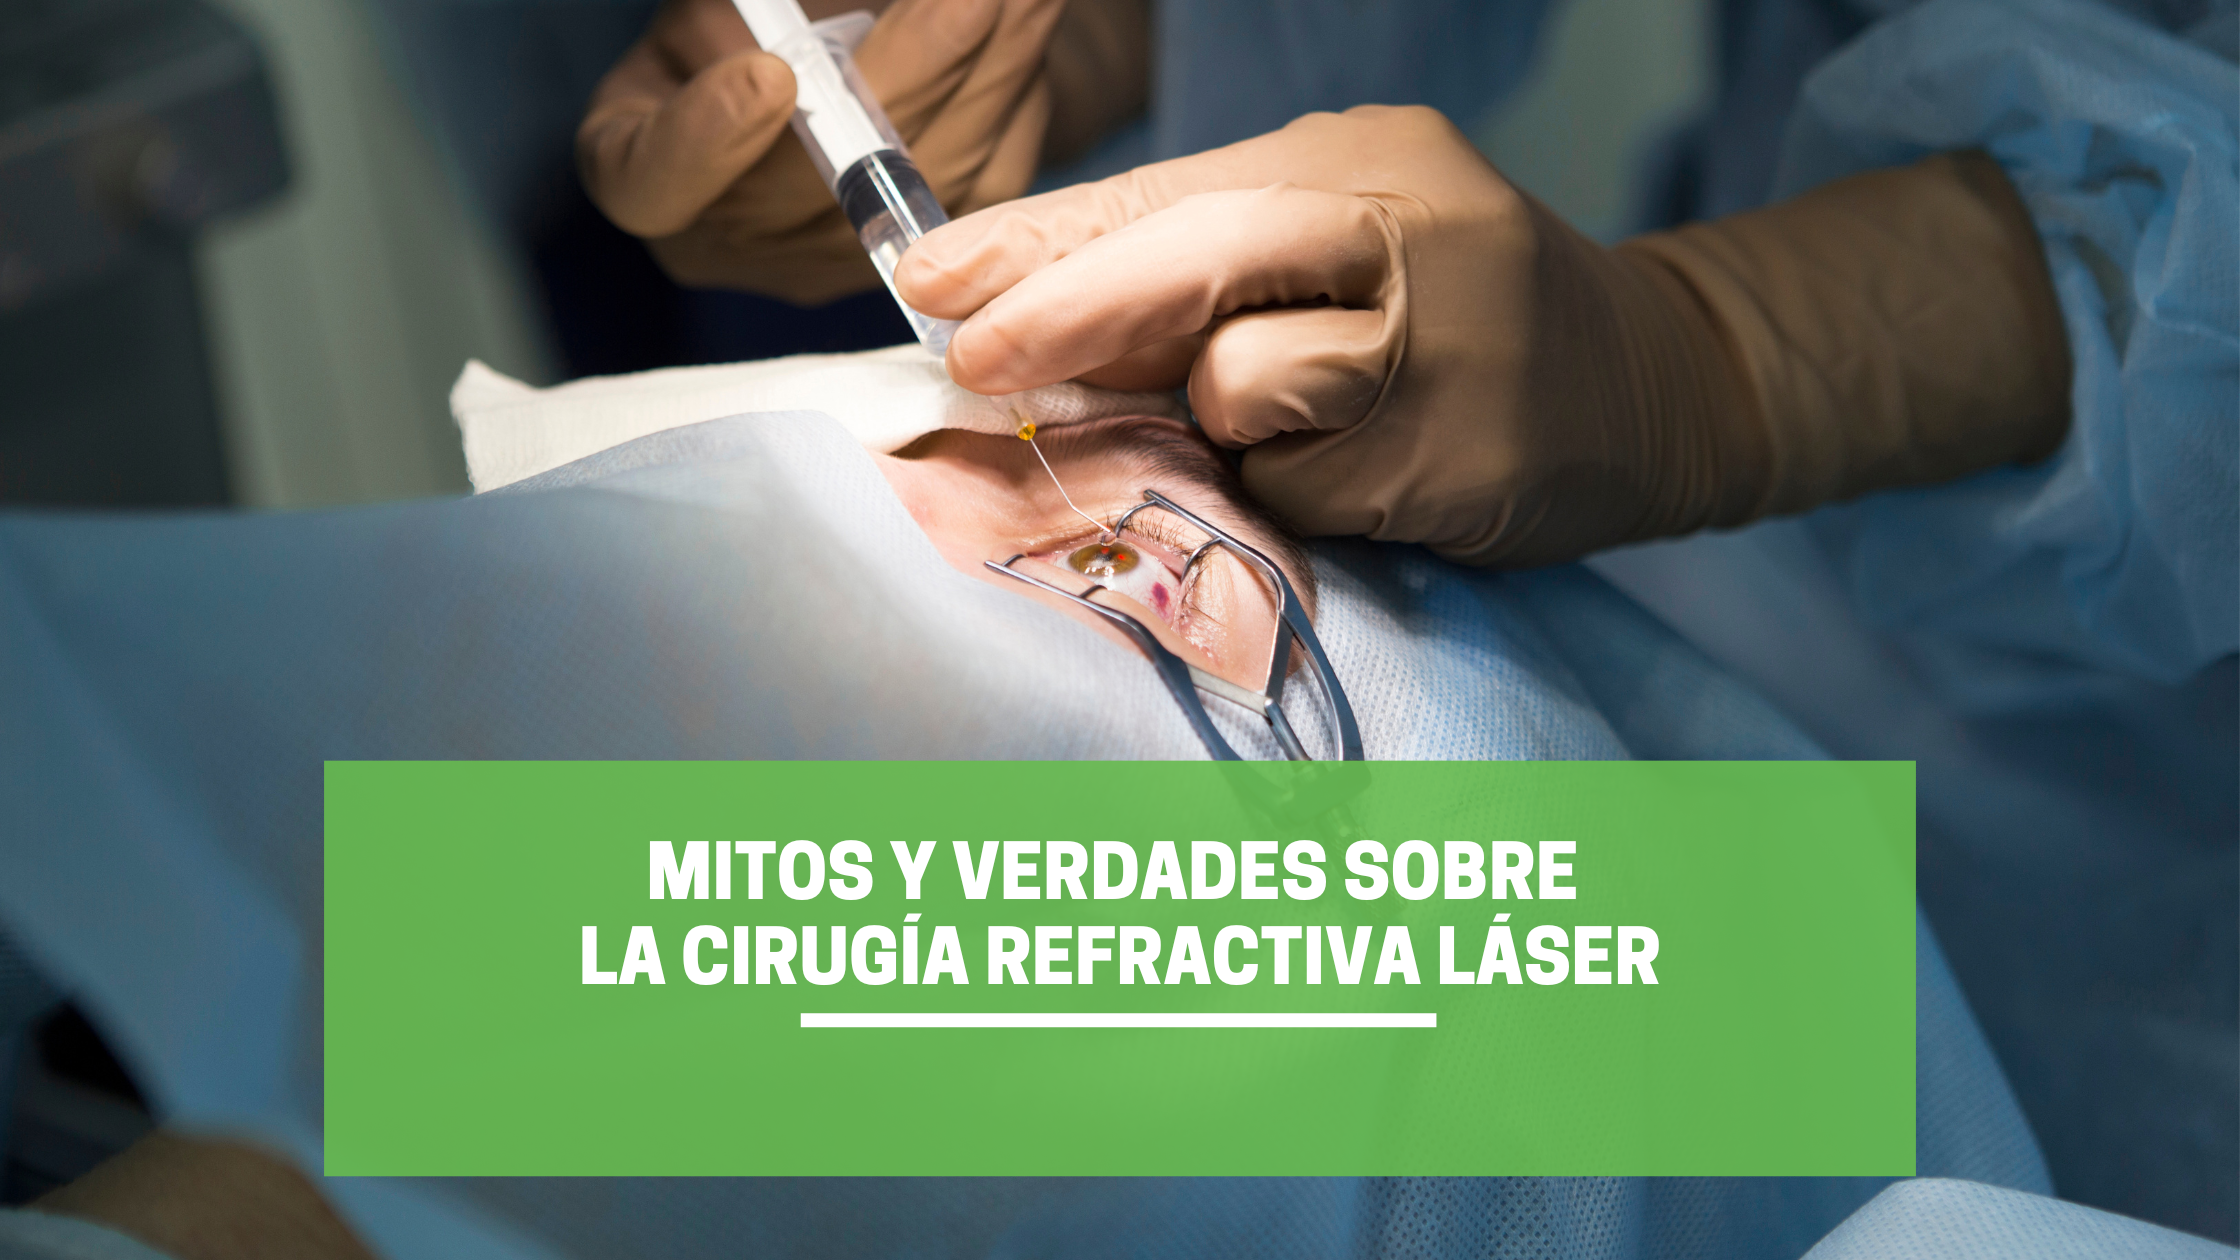 Mitos y verdades sobre la cirugía refractiva láser